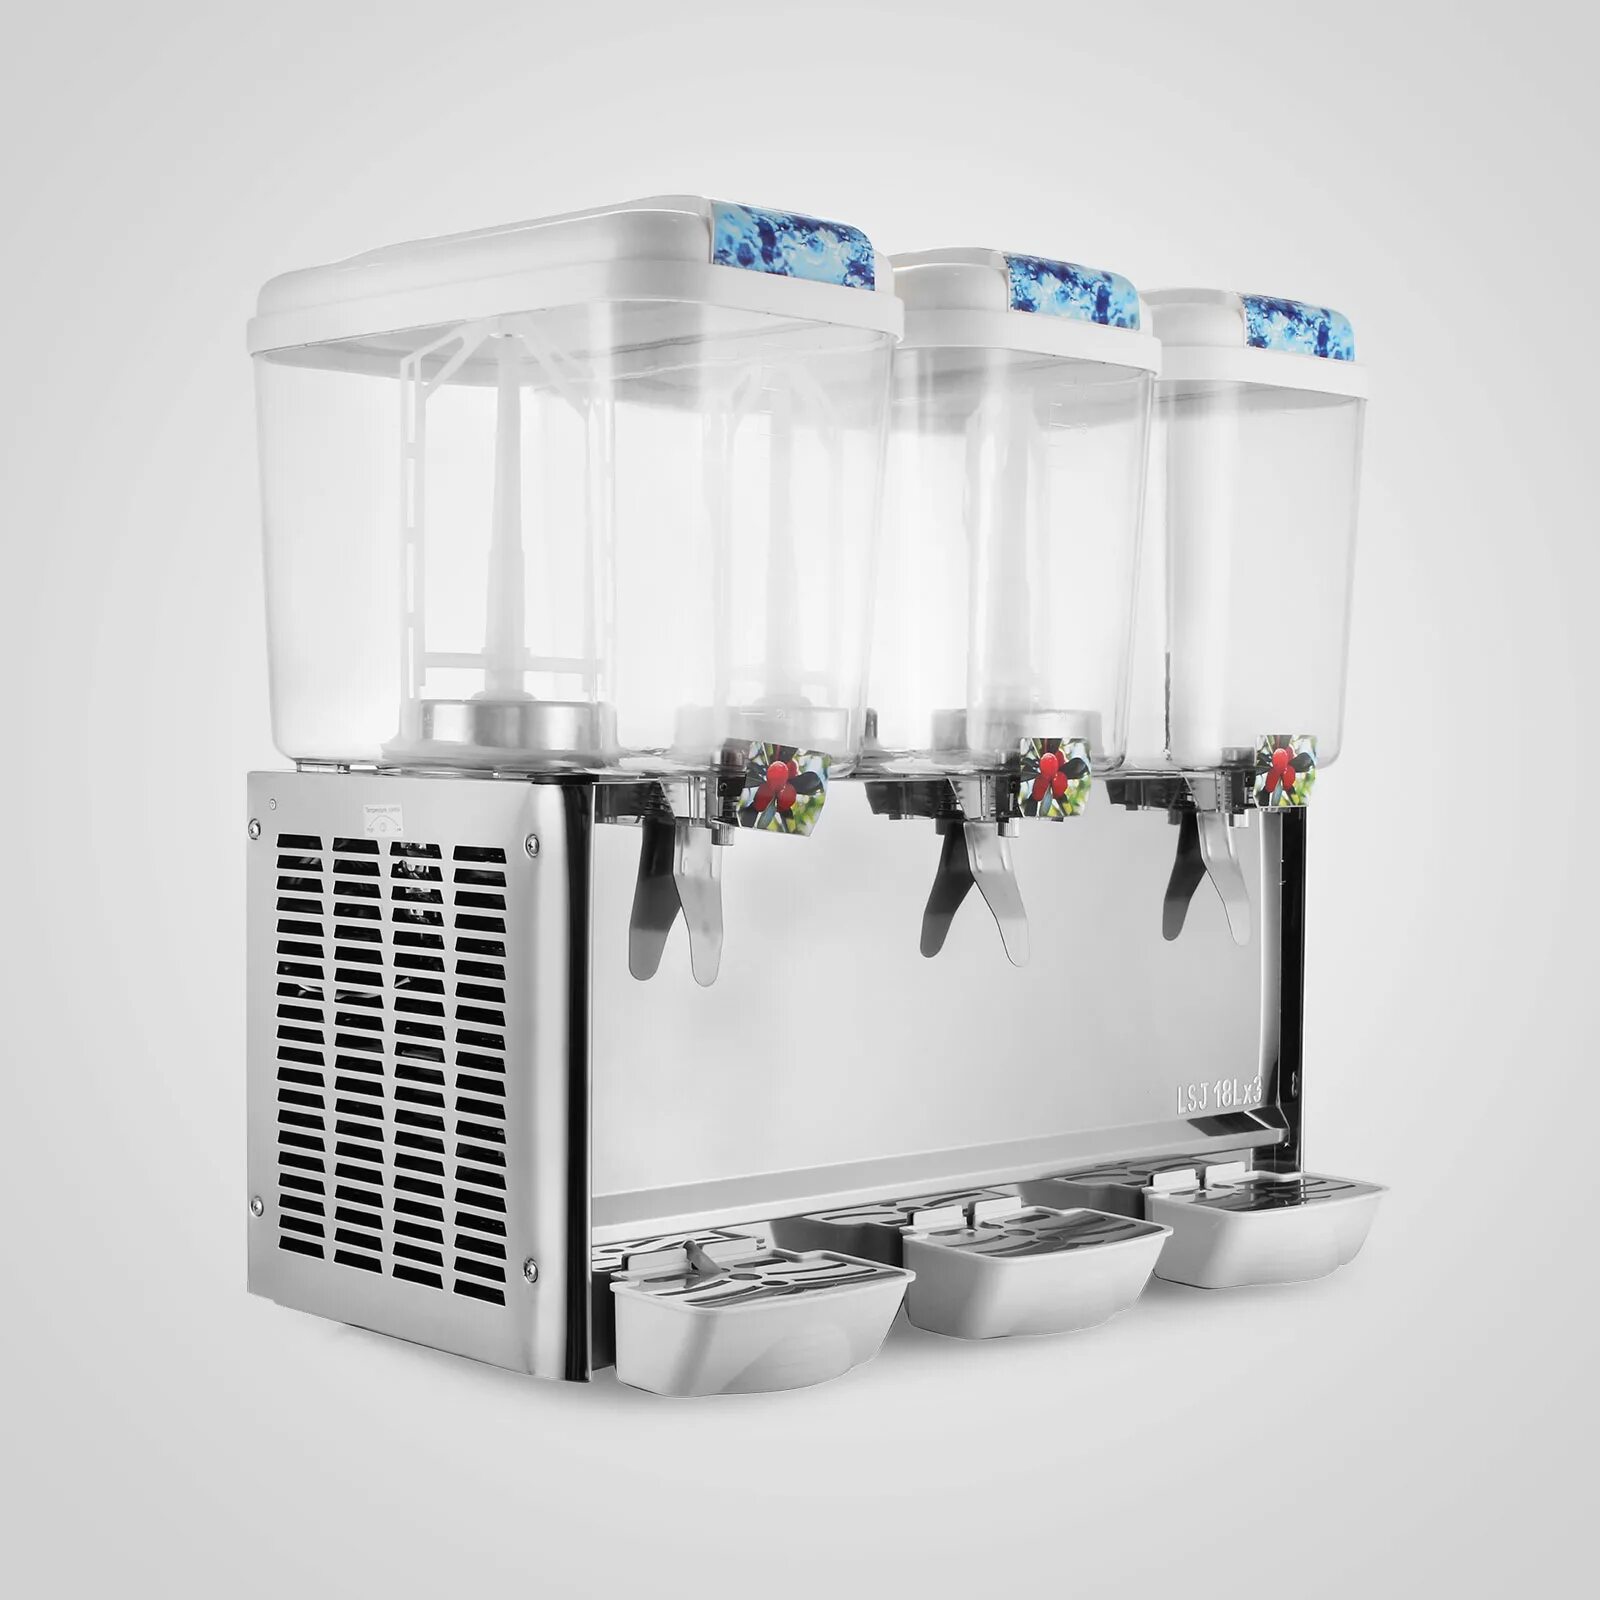 Электрический охладитель. Диспенсер для охлаждения сока Cooleq JD 12. Охладитель для соков lsj10l×3. Диспенсер для розлива напитков Beem. Охладитель для напитков Dispenser dp1-18.